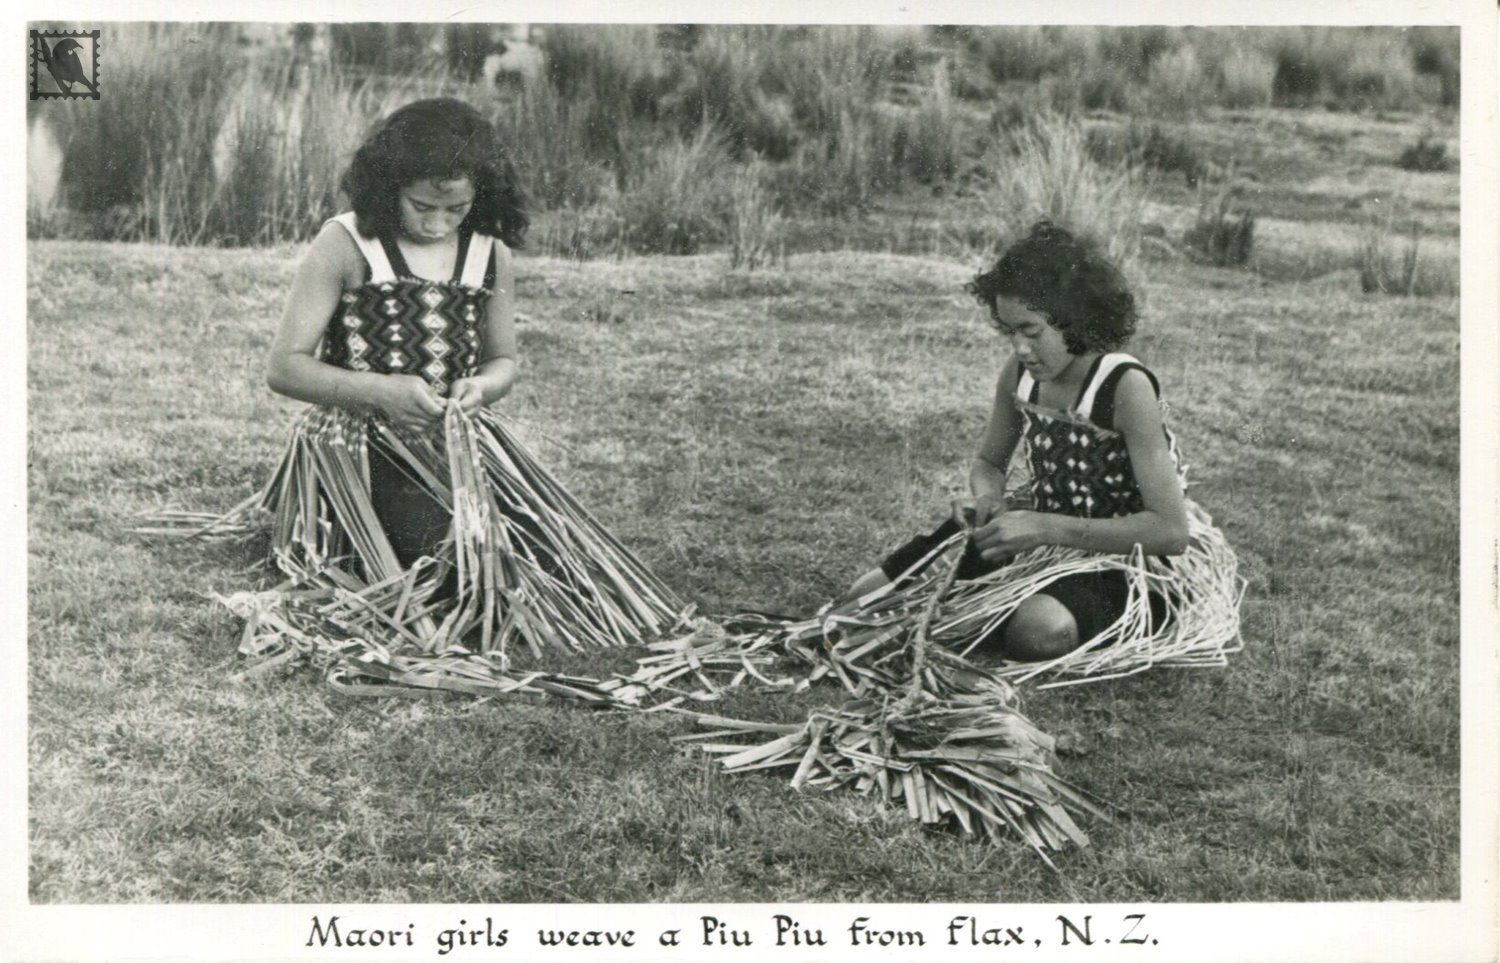 Maori Girls weaving a Piu Piu